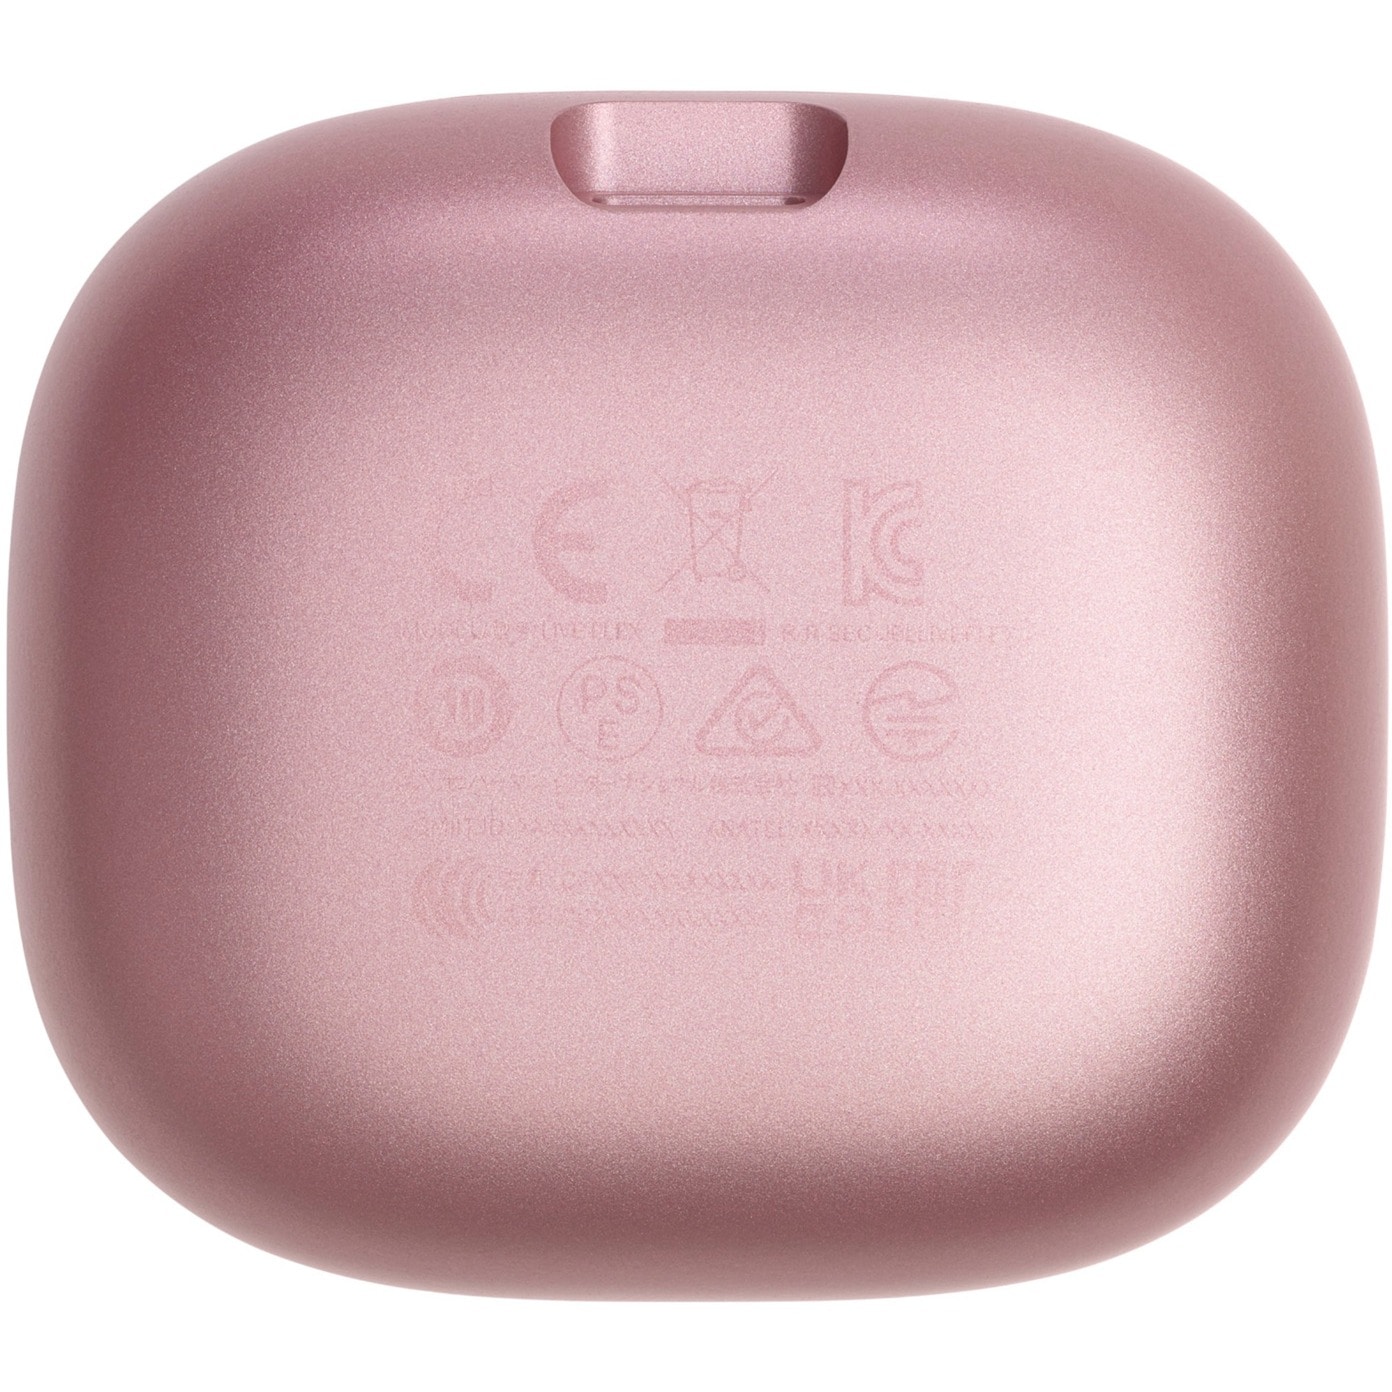 JBL LIVE ++ True In-Ear rosa Wireless Bluetooth Kopfhörer Flex Cyberport